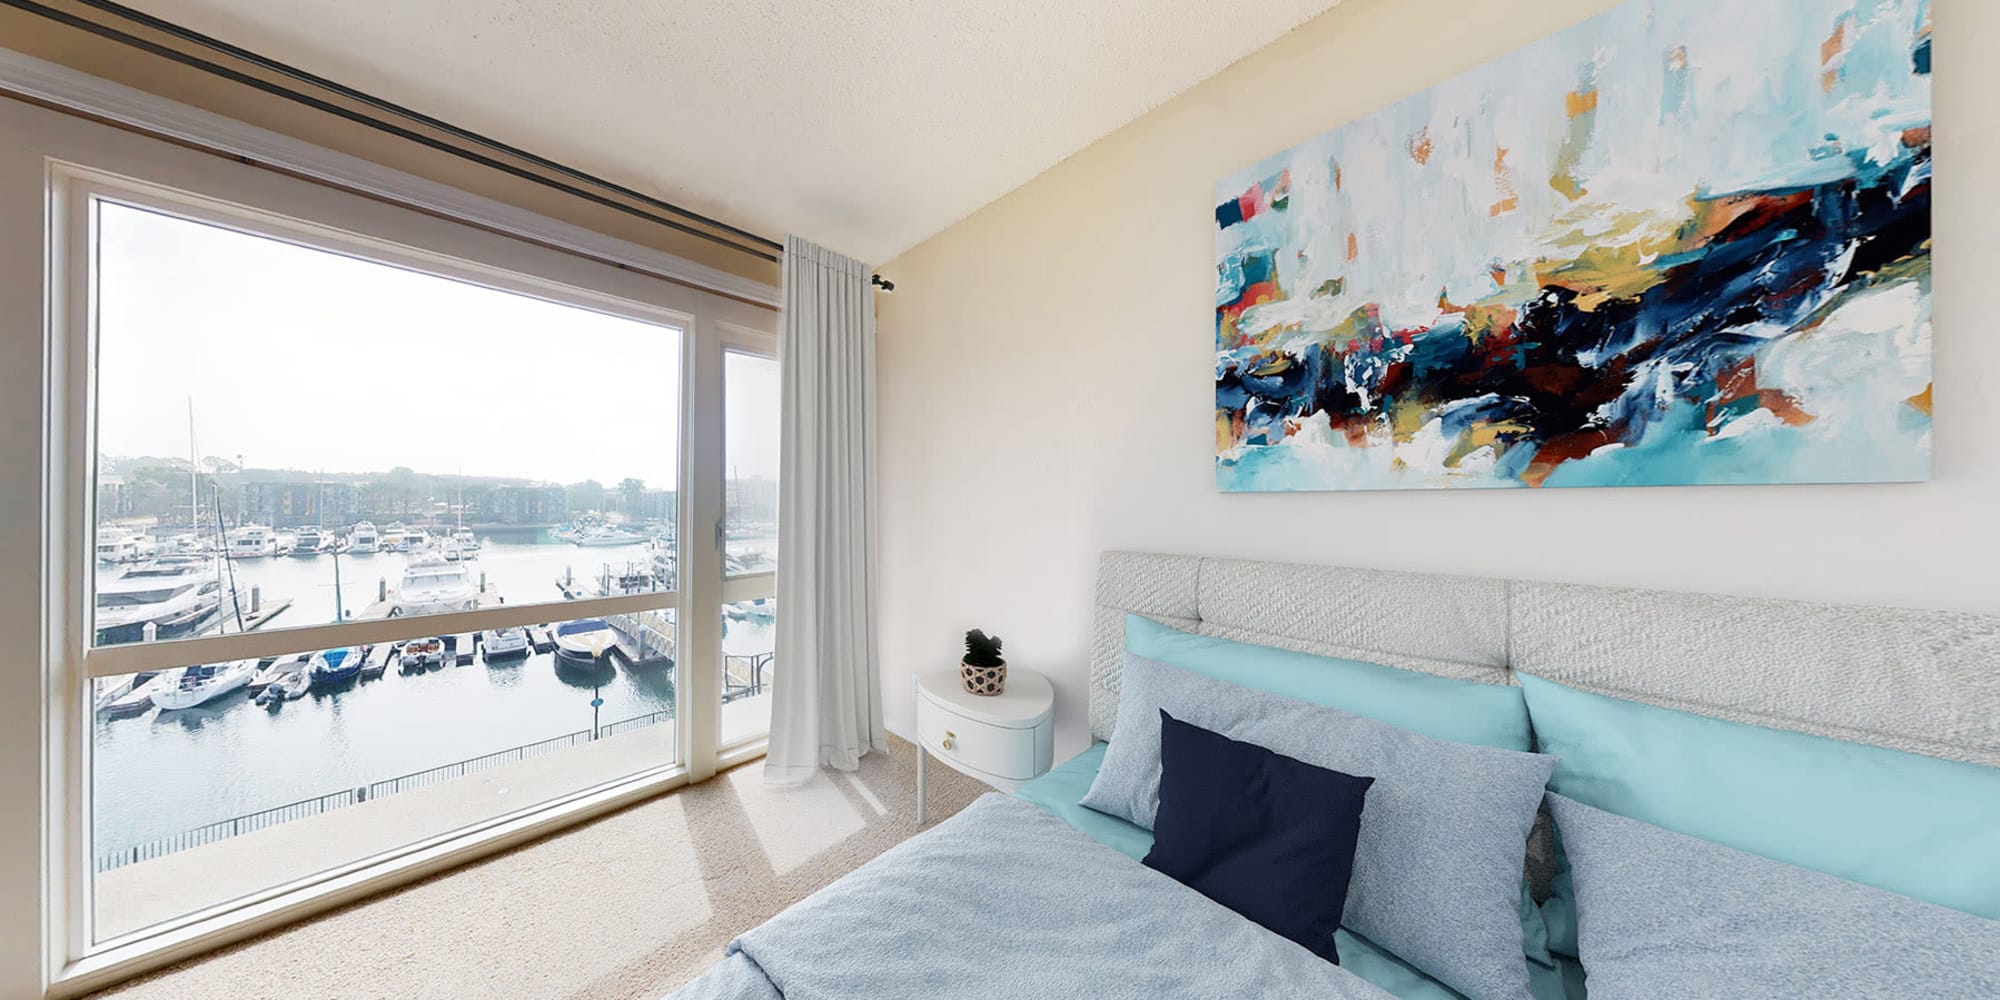 Spacious bedroom with waterfront views of the marina at The Tides at Marina Harbor in Marina del Rey, California